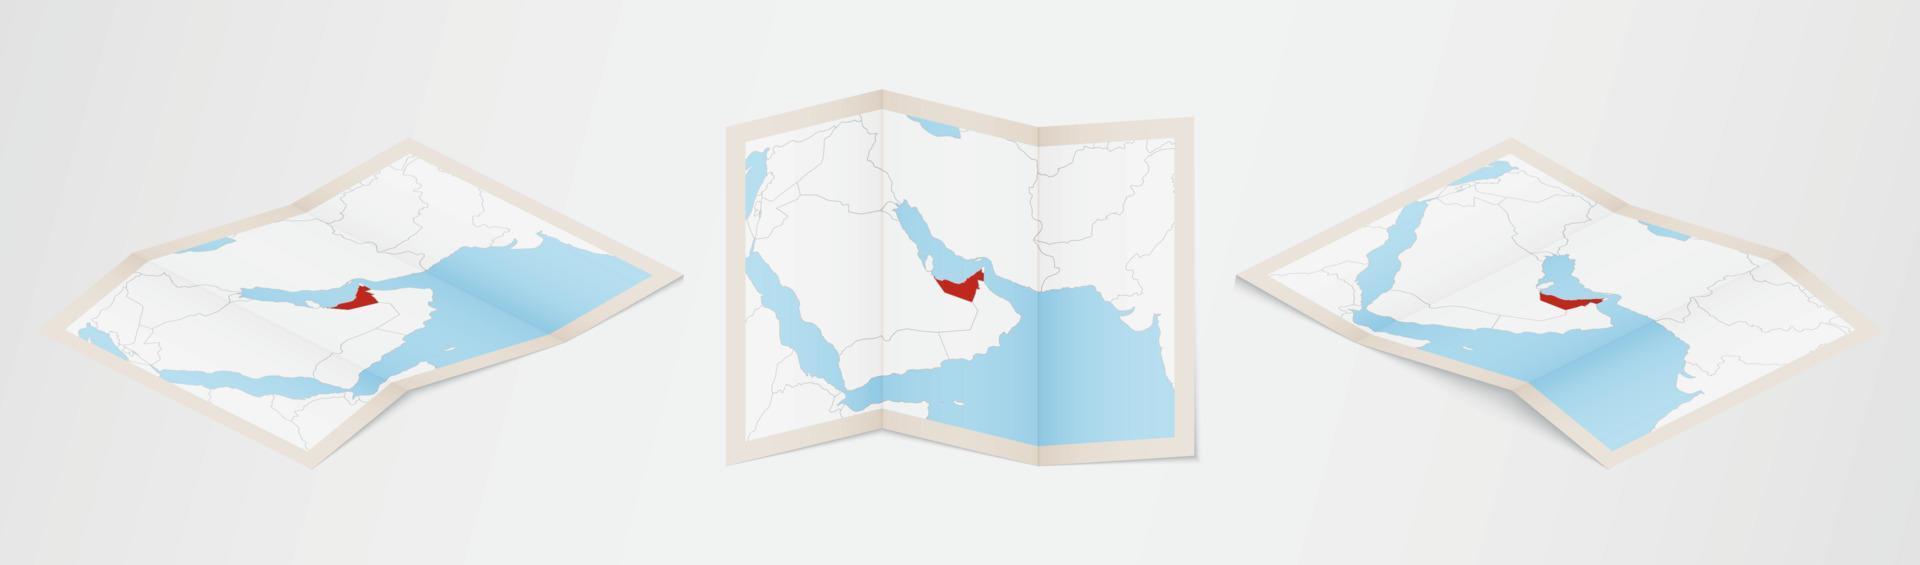 mapa dobrado dos Emirados Árabes Unidos em três versões diferentes. vetor